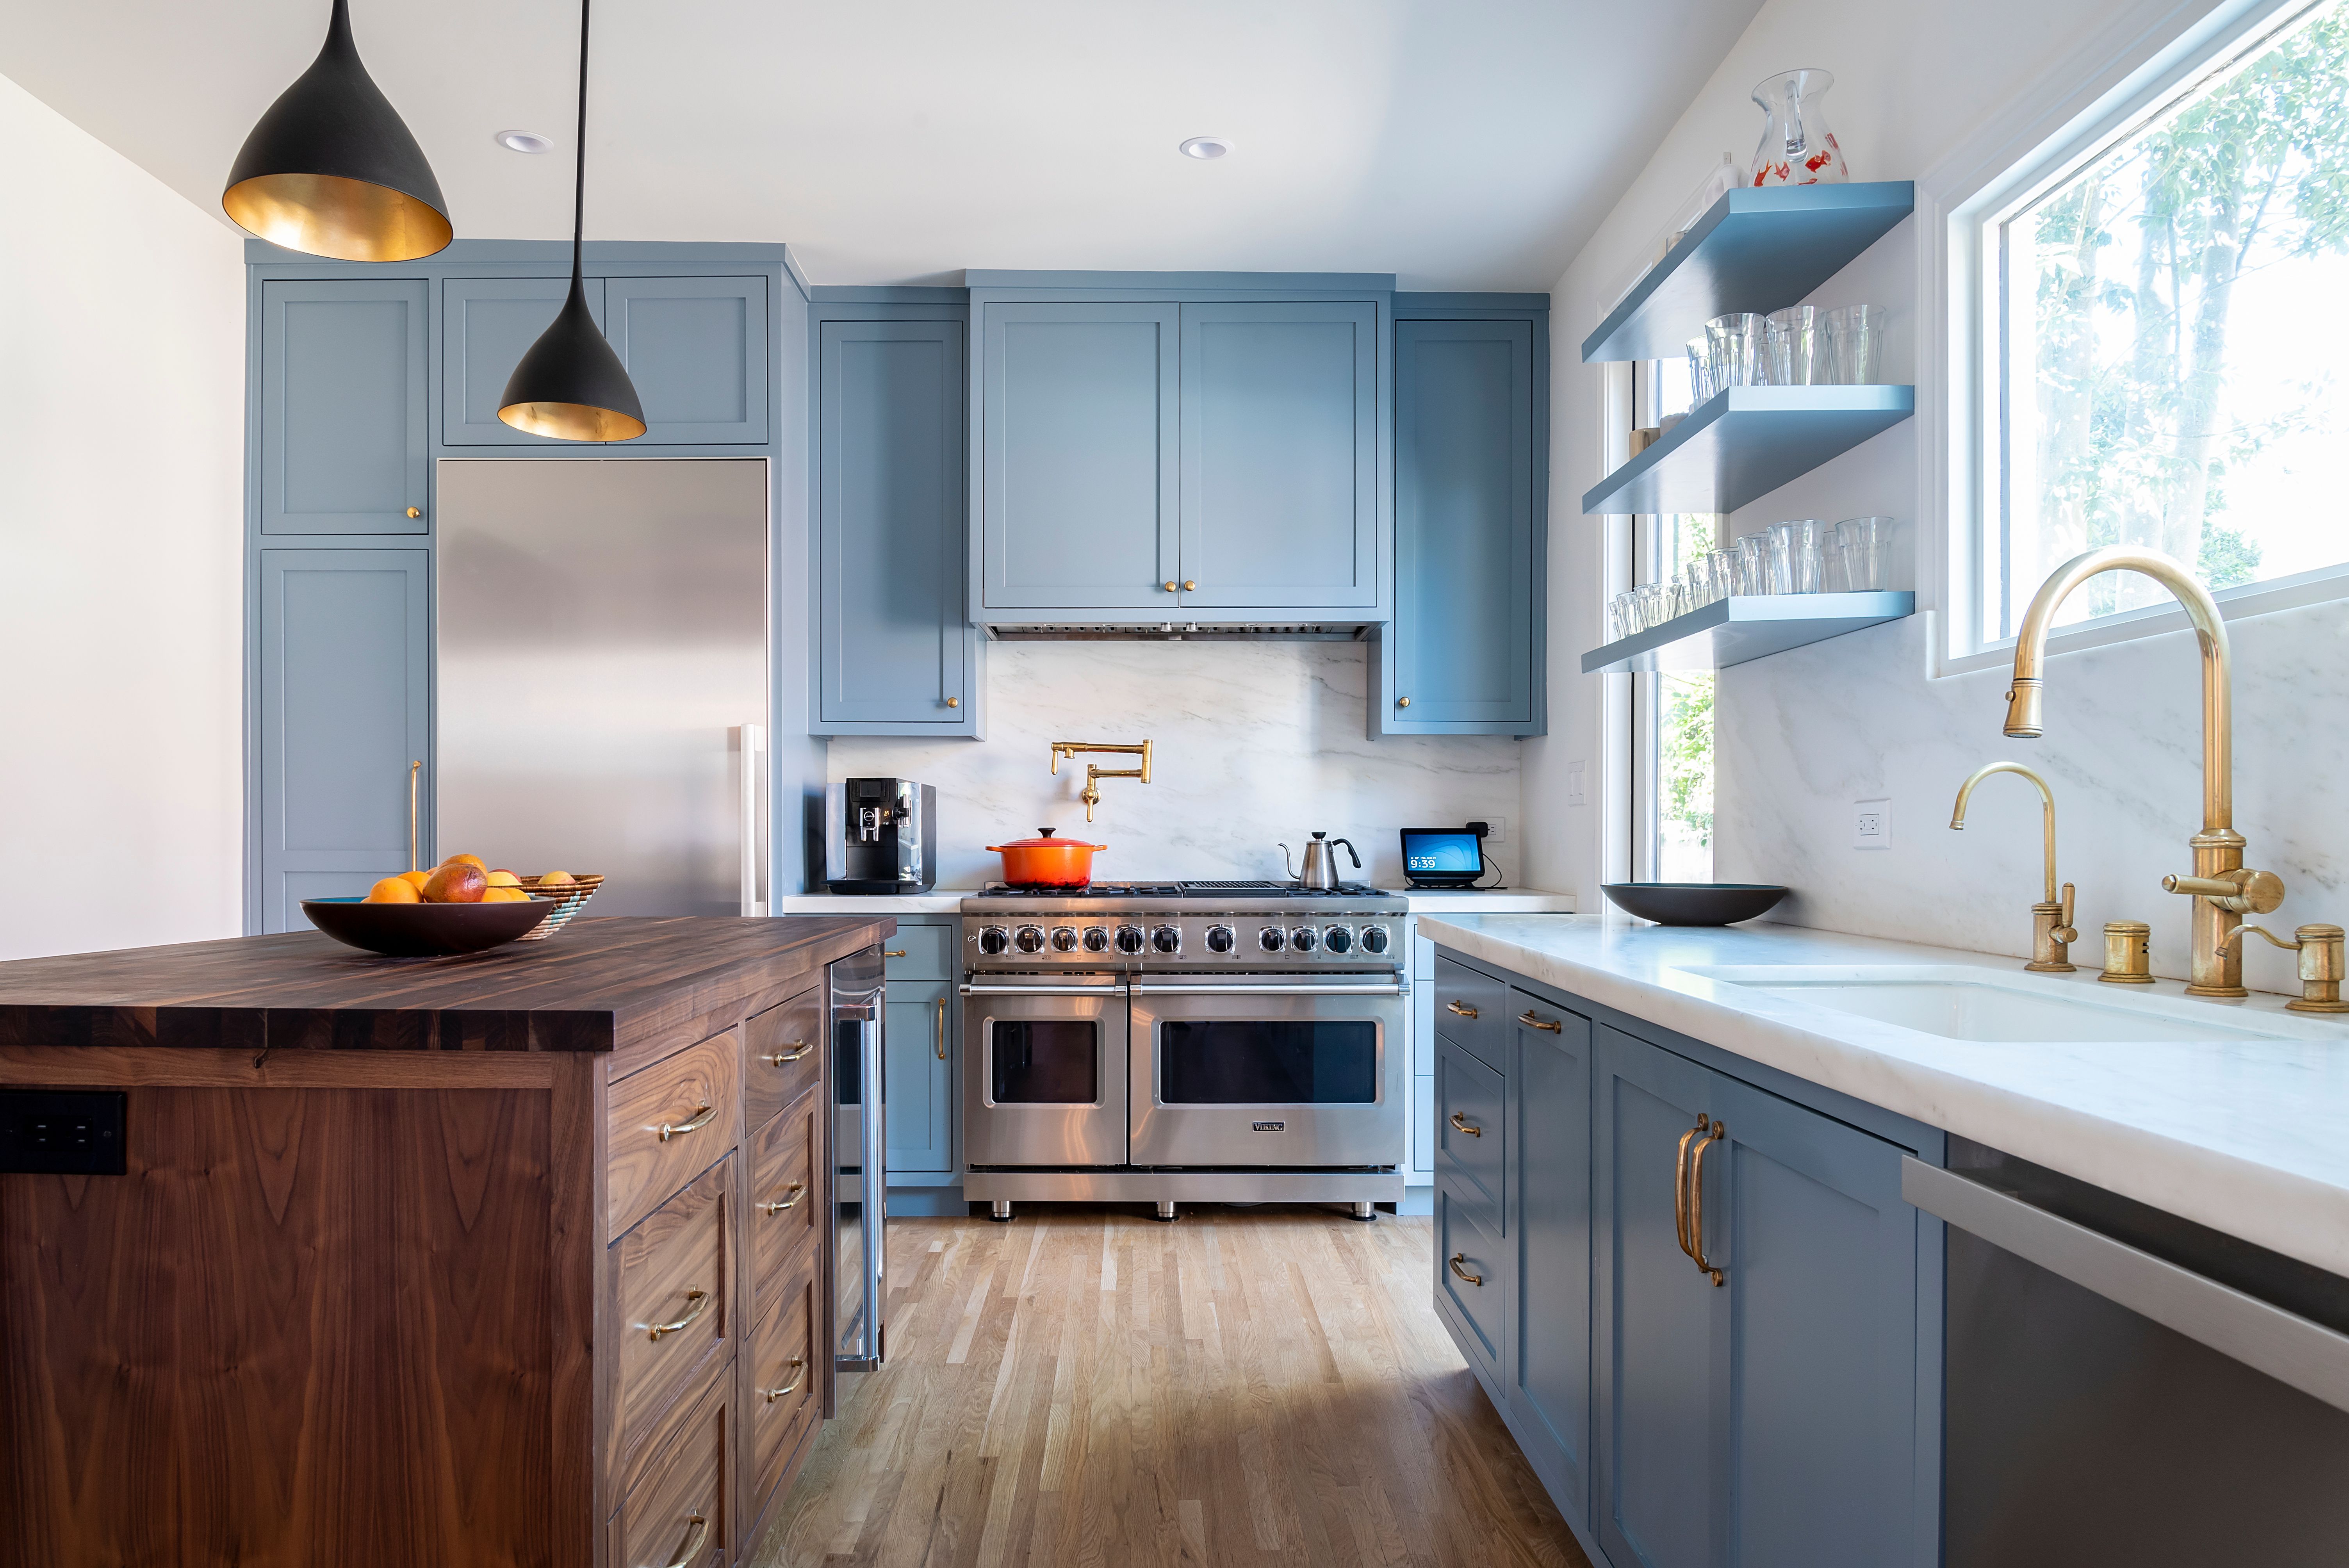 Kitchen wall lighting ideas – modern looks to illuminate your space